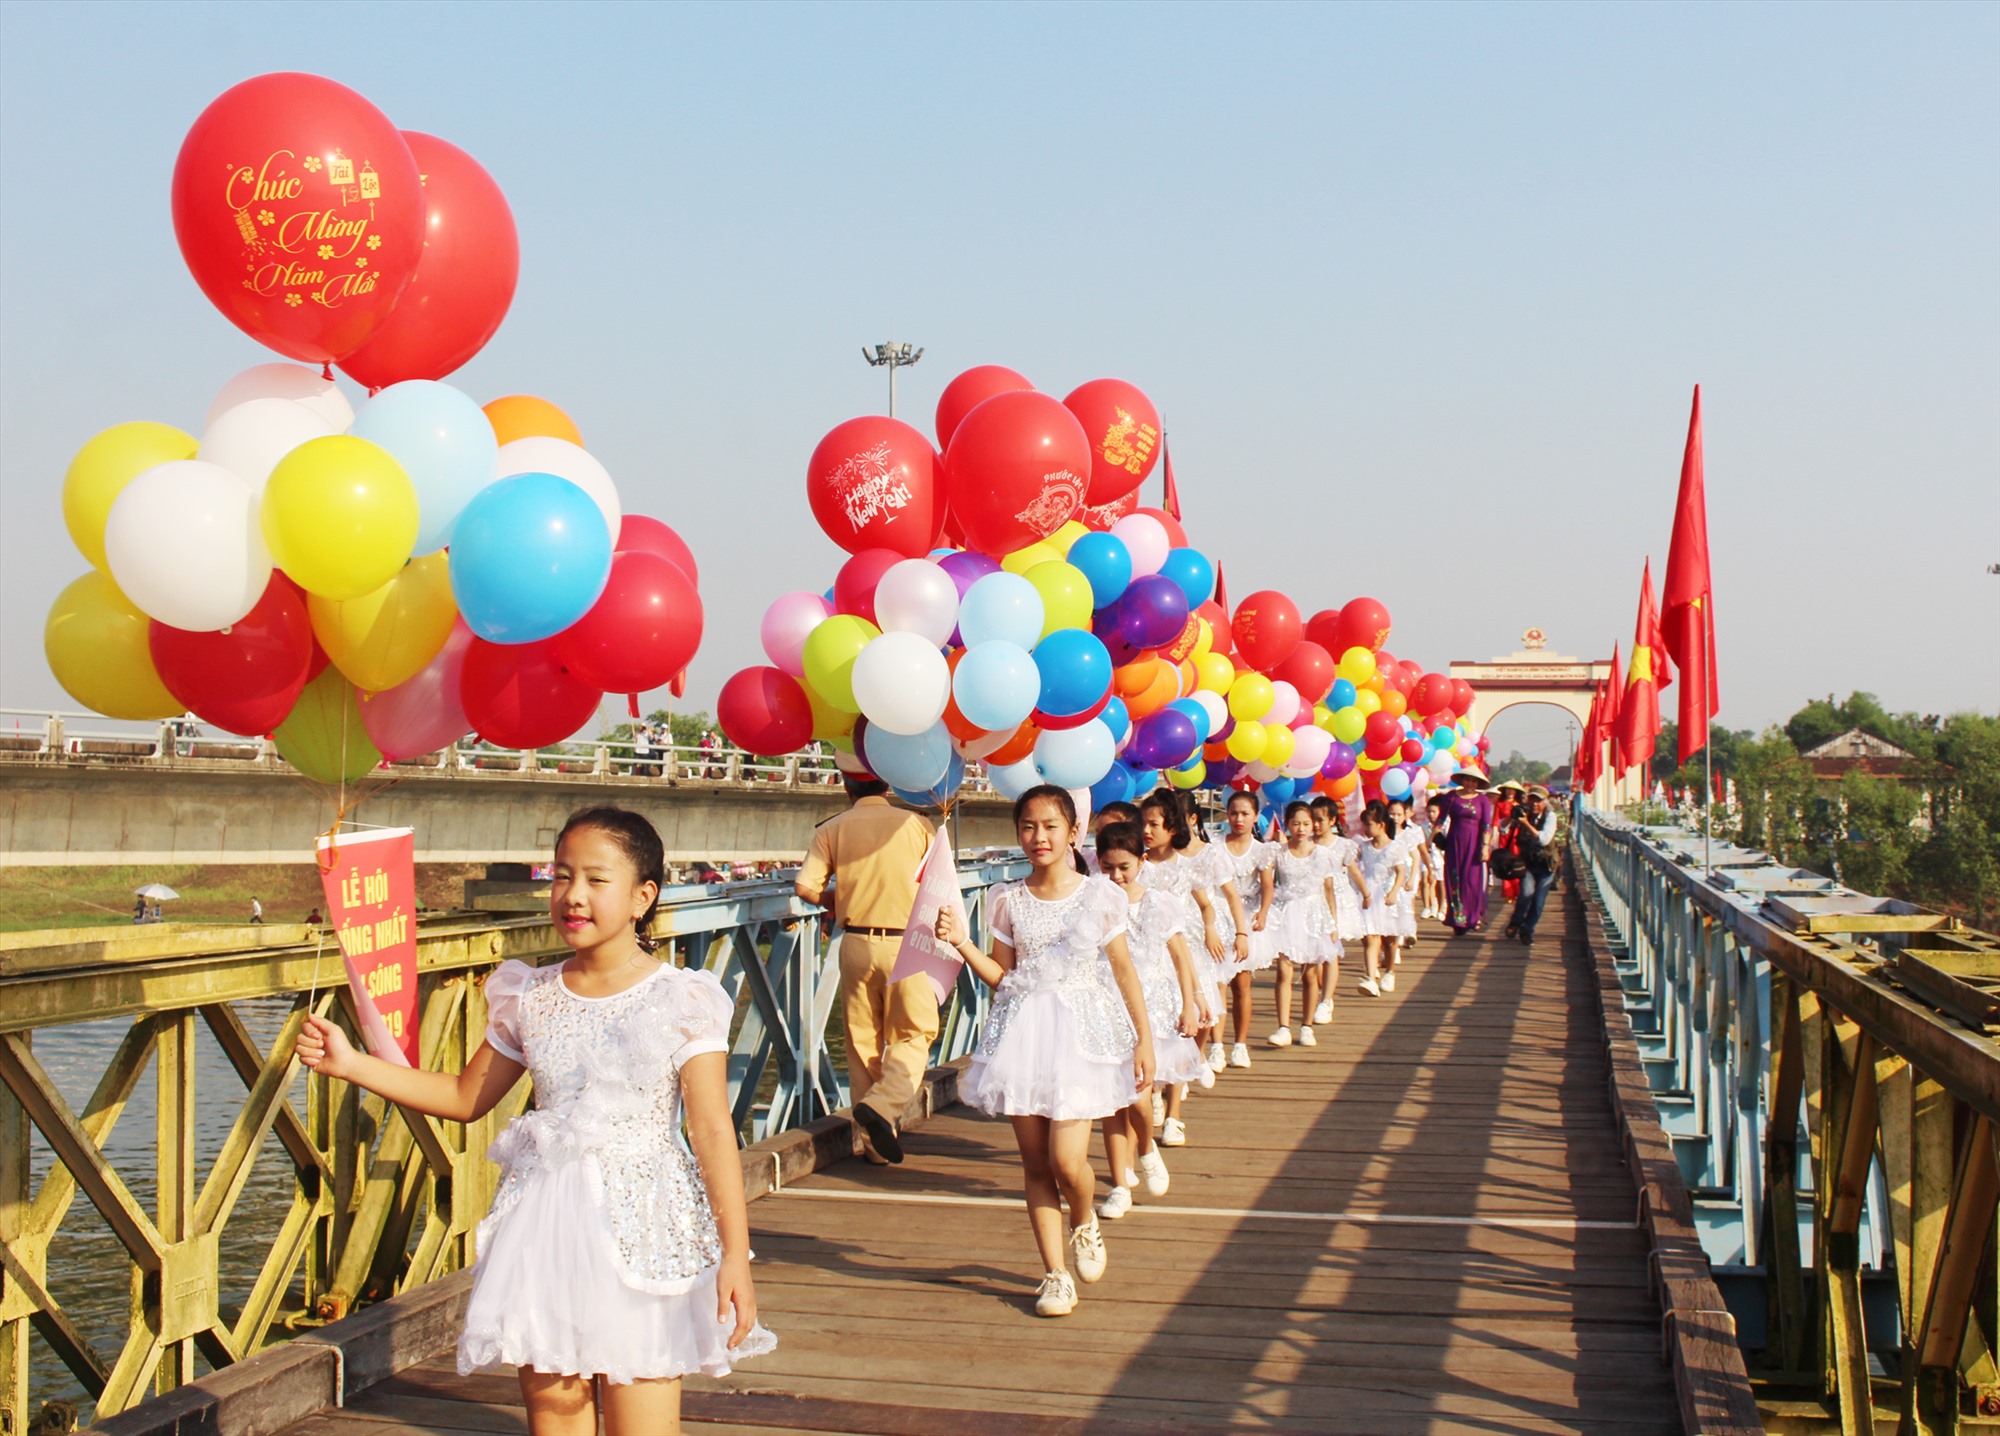 Di tích quốc gia đặc biệt Đôi bờ Hiền Lương- Bến Hải là một những không gian chính để tổ chức “Festival vì Hòa bình“-Ảnh: Tú Linh